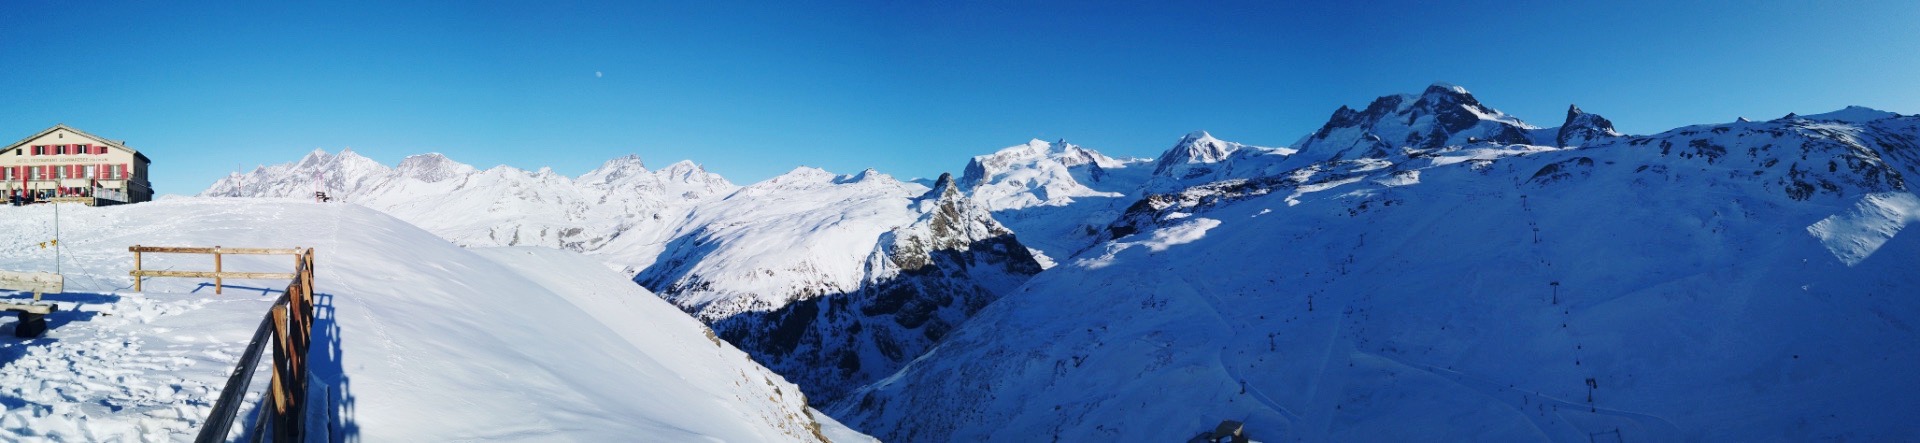 马特宏峰 两年之约 这次可以近距离接触你了 从山下到山顶坐缆车要四十分钟 滑雪滑到爽死 3883 滑